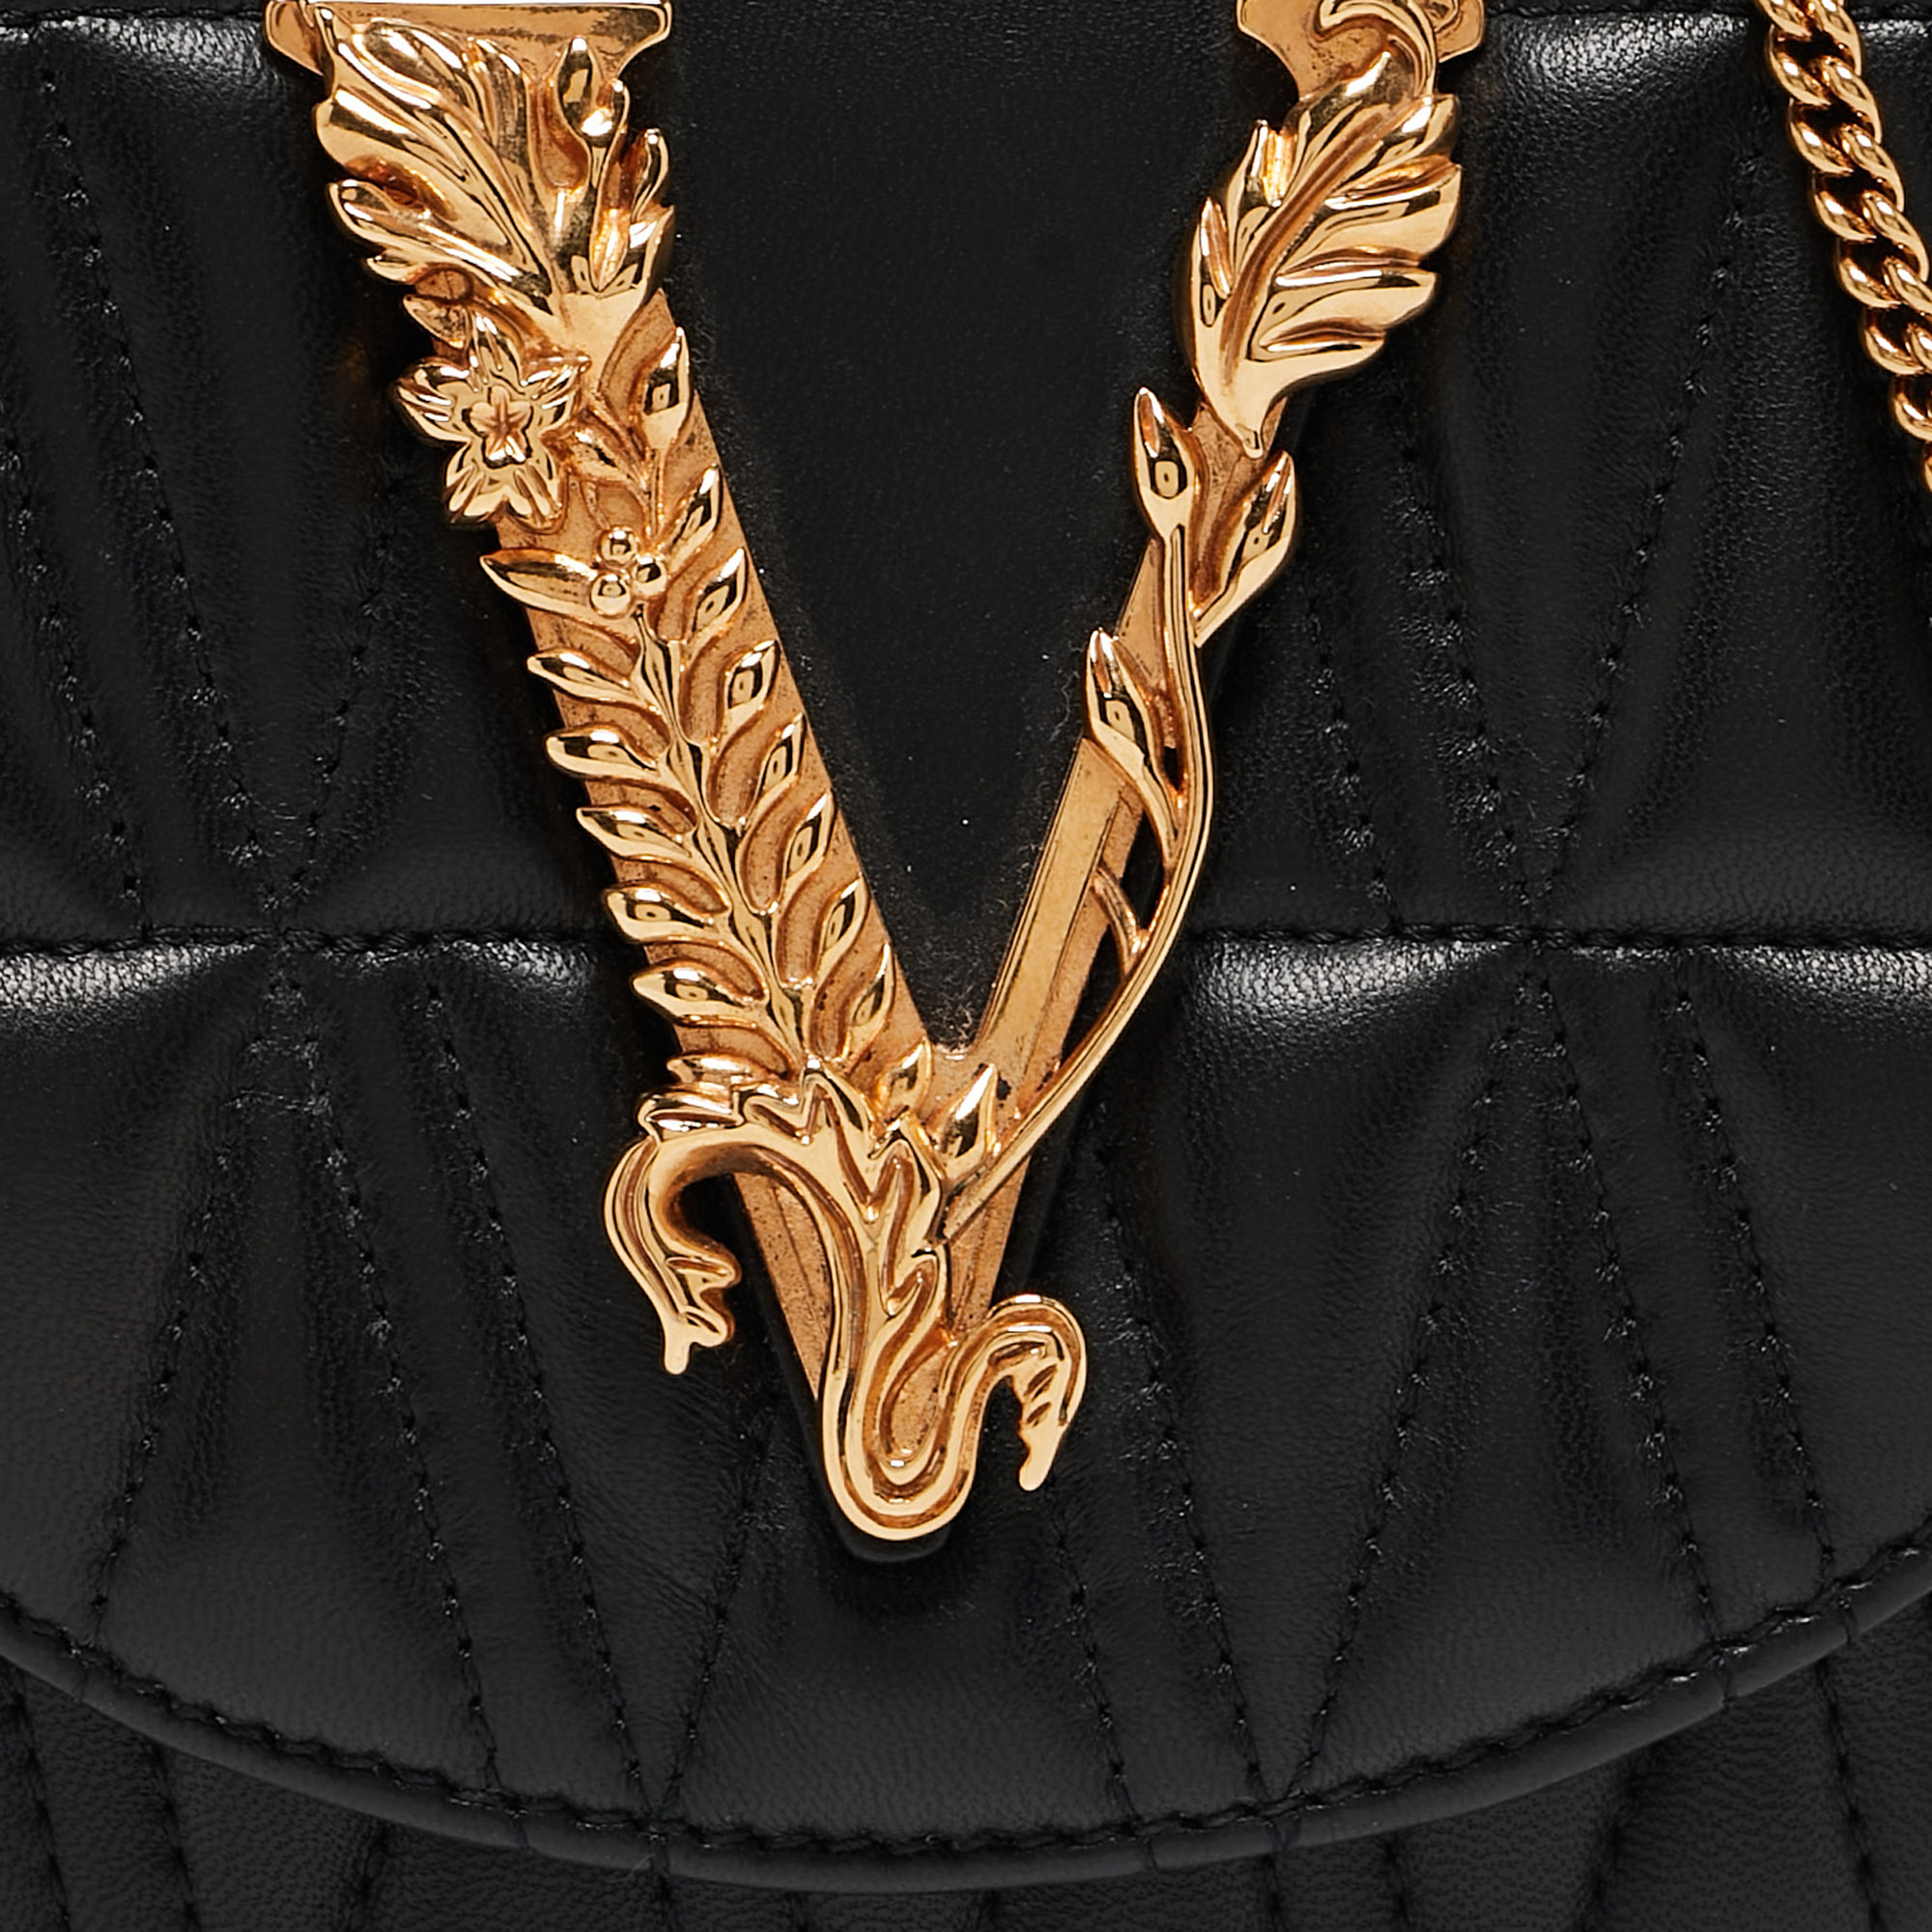 Versace Black Quilted Leather Virtus Belt Bag